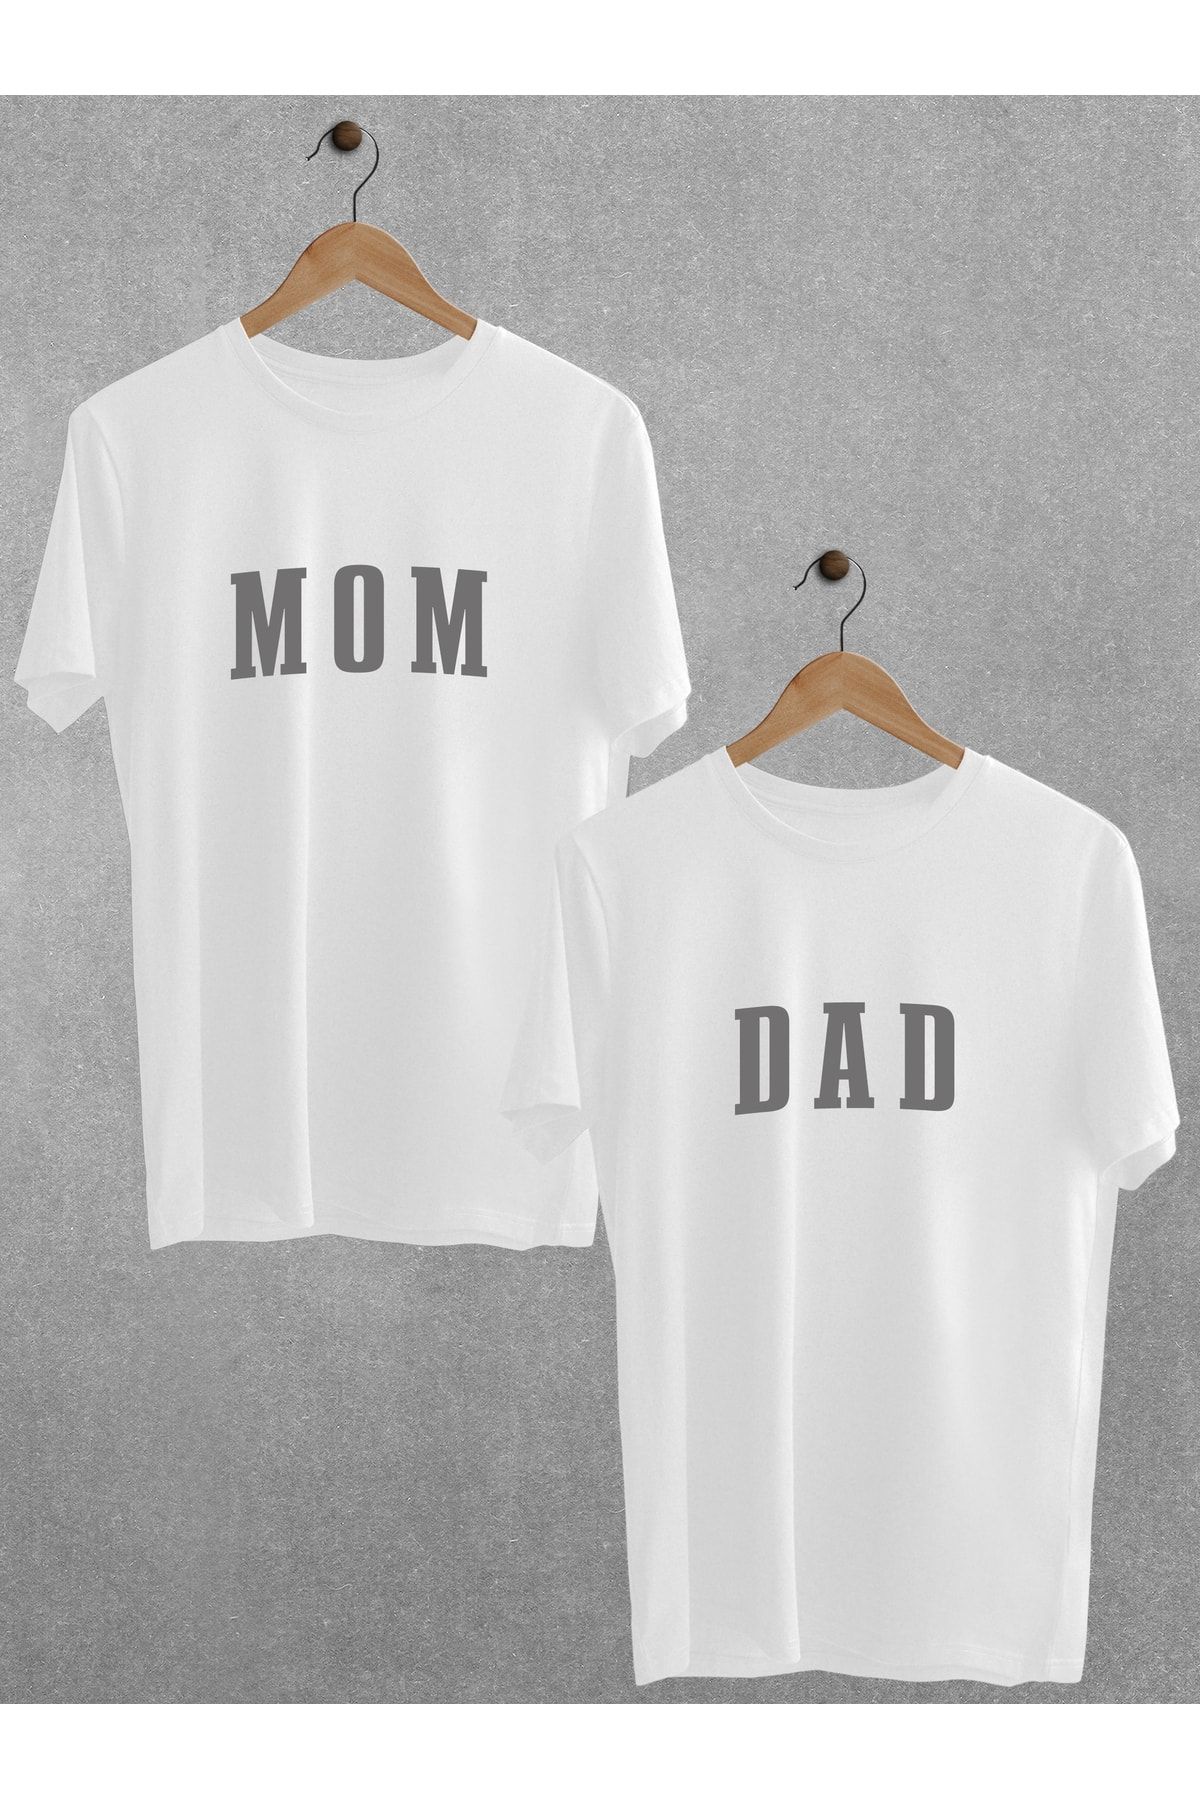 Pear Wear Mom Dad Baskılı 2'li Tişört Cinsiyet Partisi Anne Baba Oversize Çift T-shirt